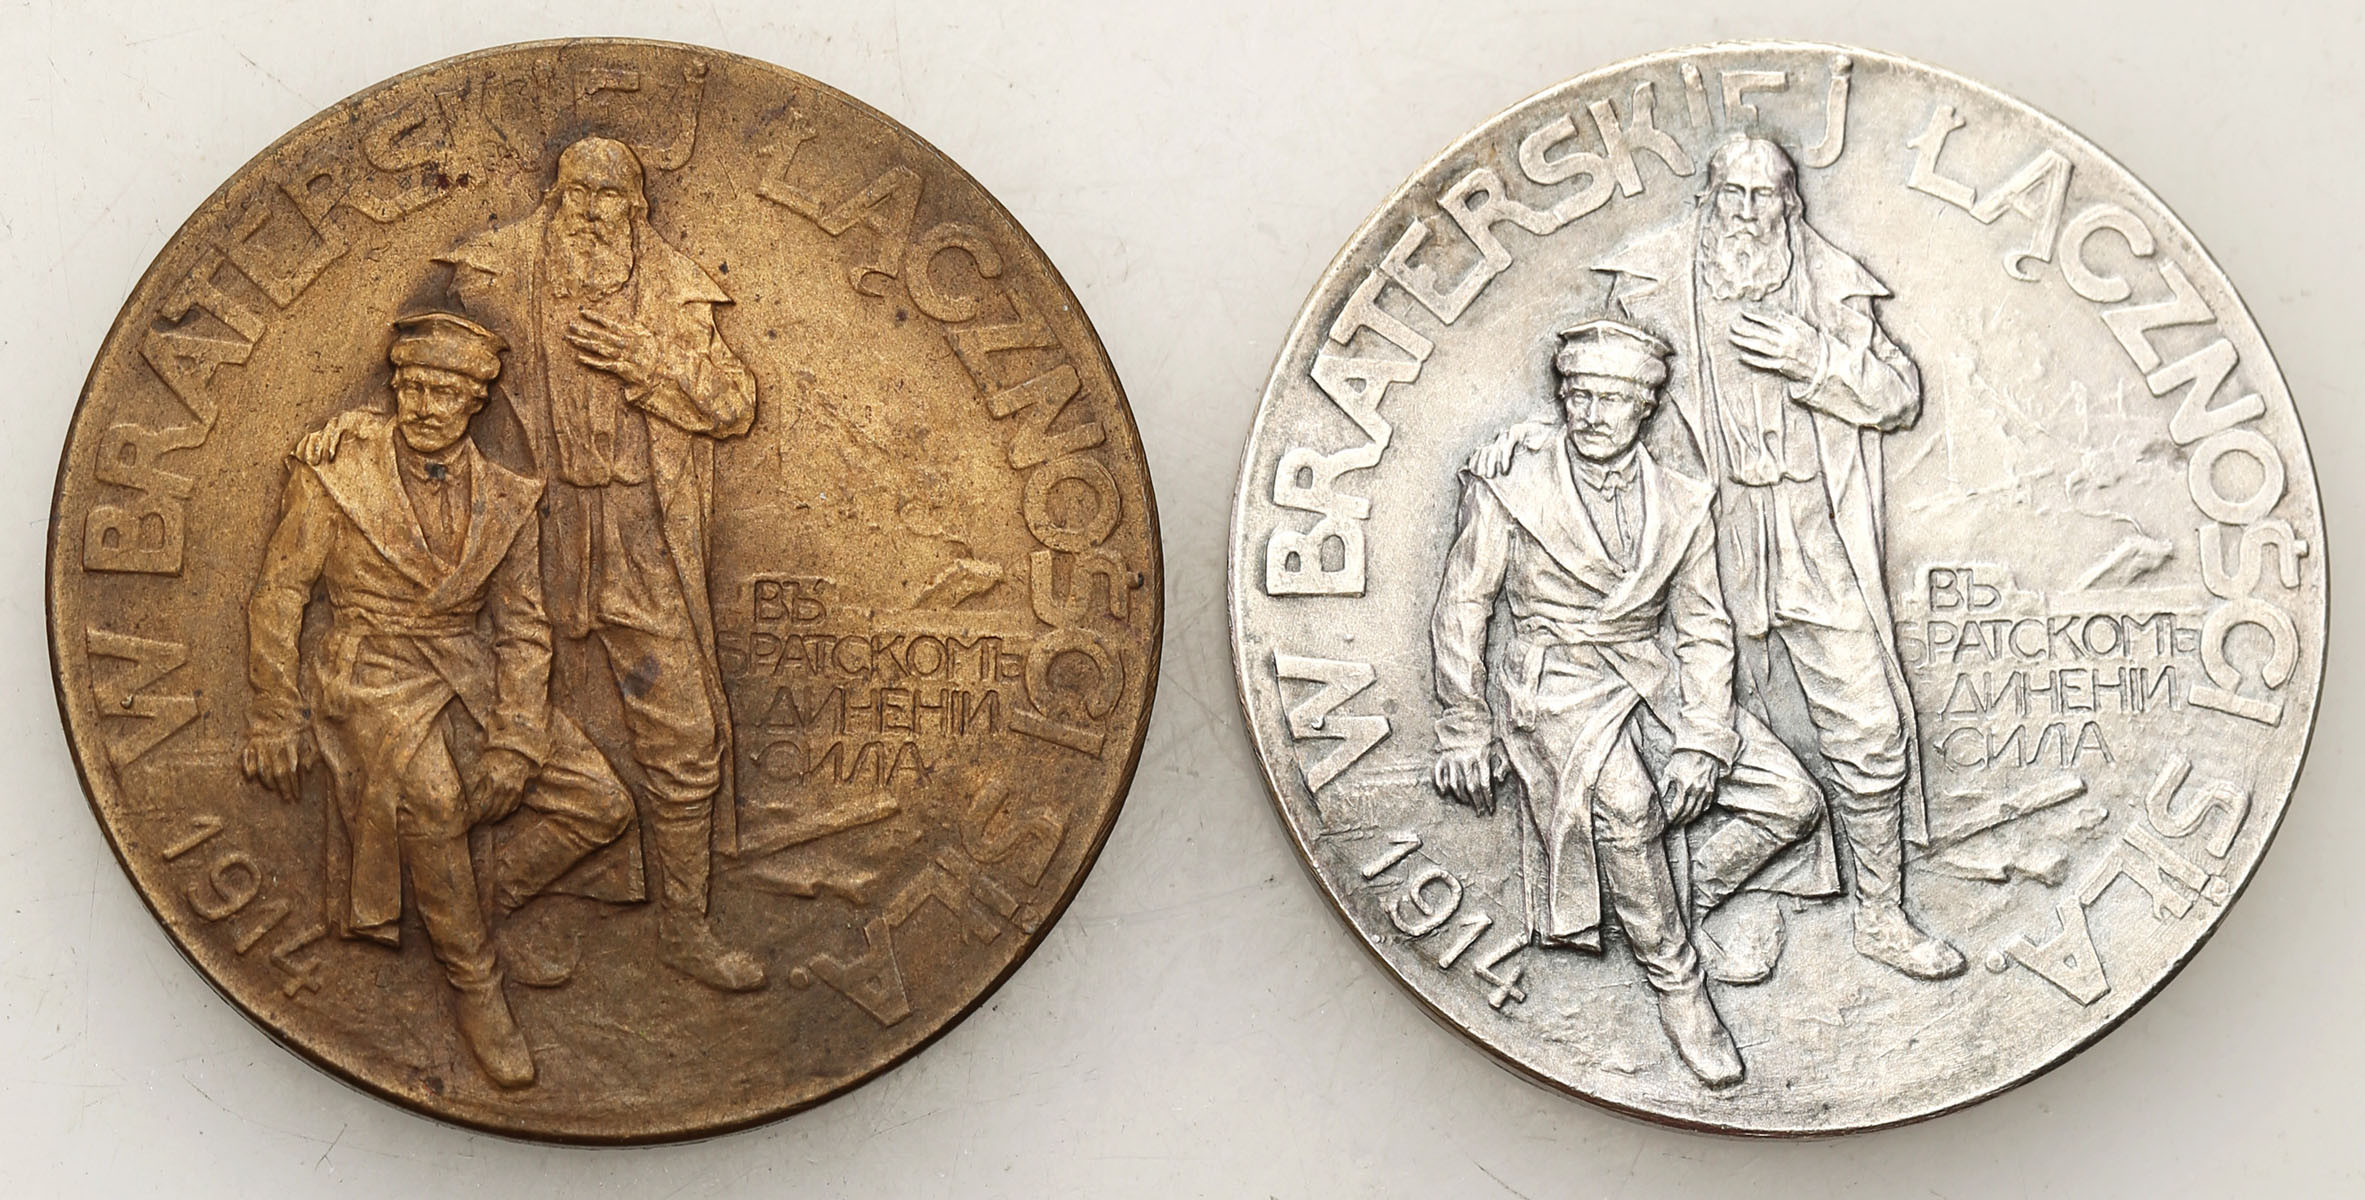 Polska. Medal Rosjanie Braciom Polakom 1914, brąz i srebro, zestaw 2 sztuk